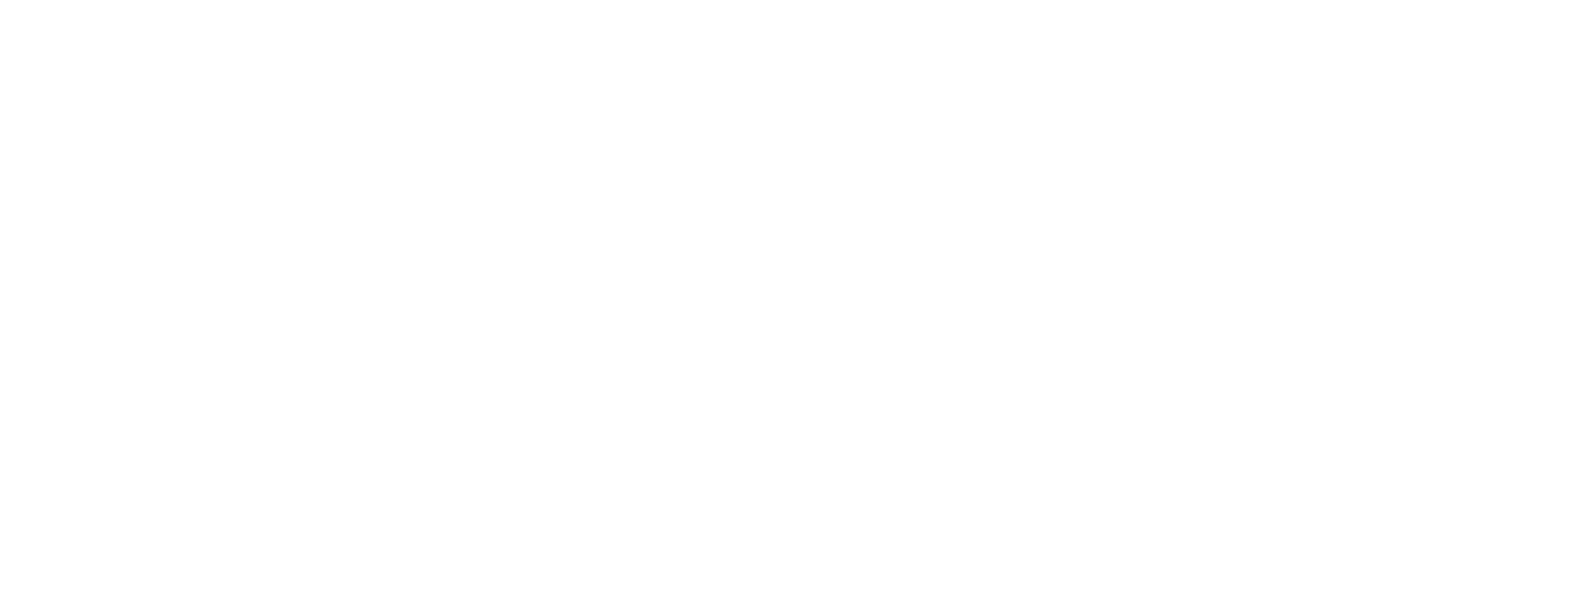 Tigo Energy logo large for dark backgrounds (transparent PNG)